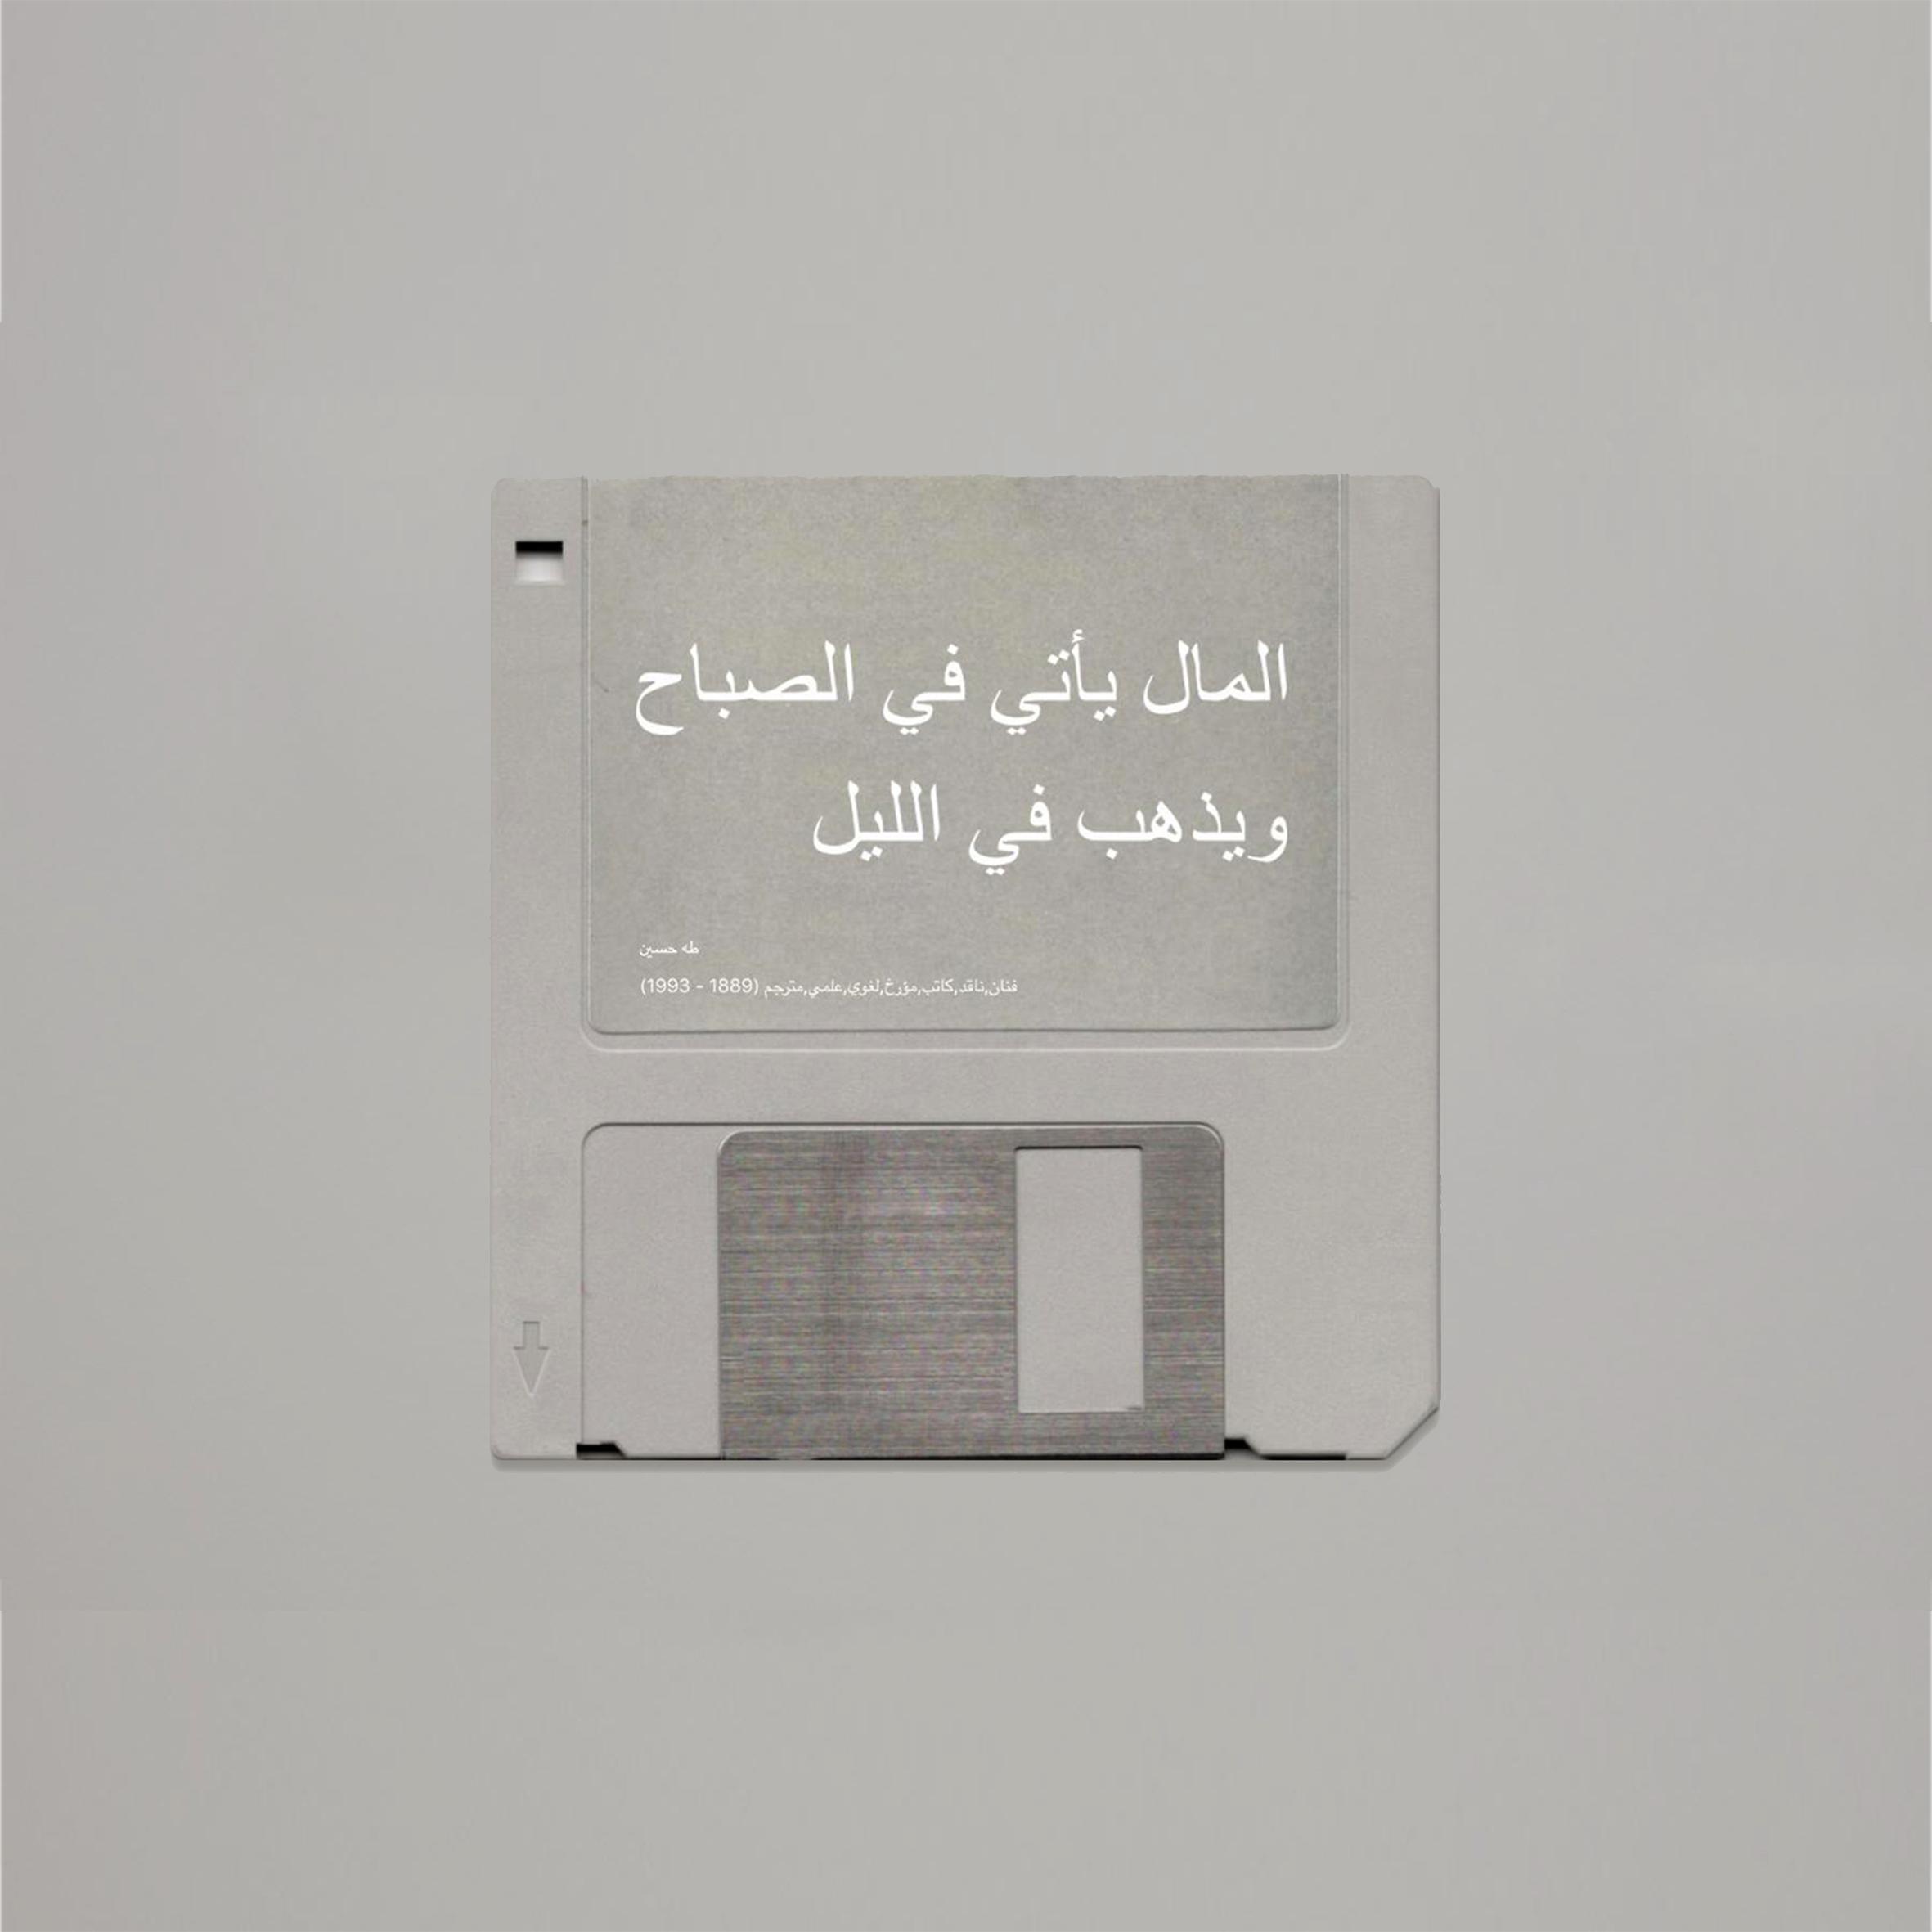 Taha Hussein, 2009
Photographie sur aluminium 
80 x 80 cm